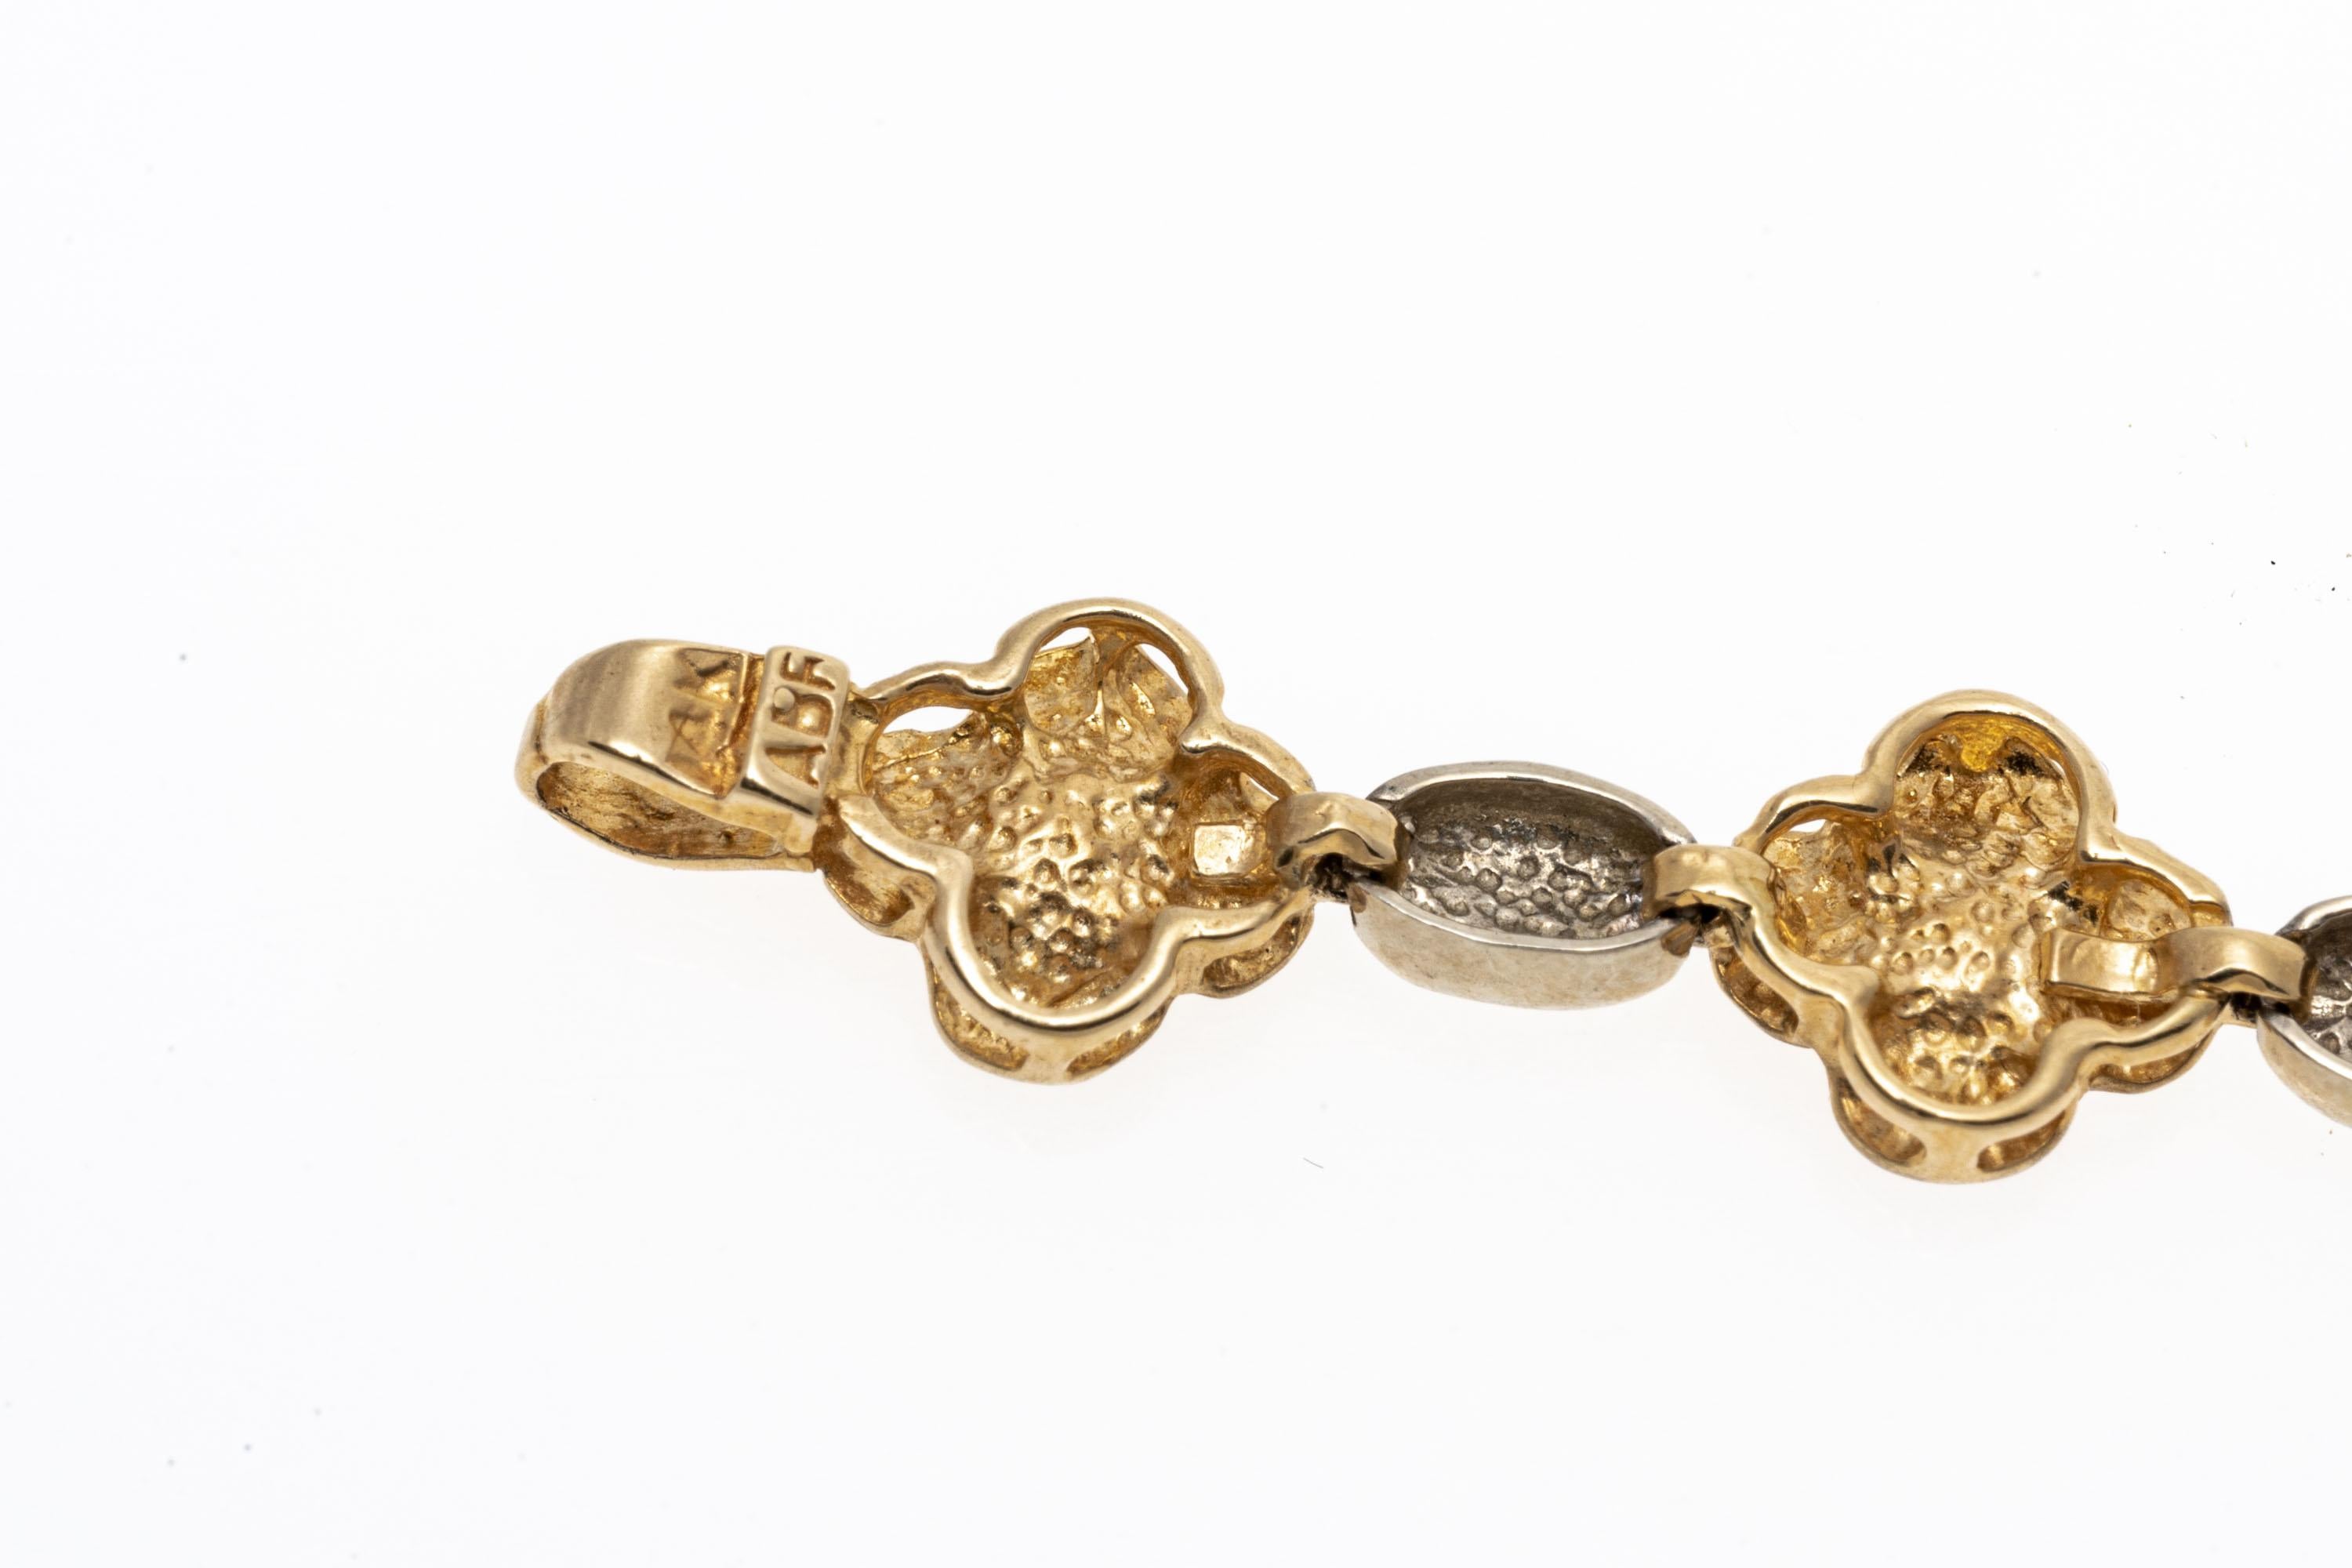 Ein italienisches Line-Armband aus 14-karätigem Gold. Dieses bezaubernde Armband hat ein abwechselndes Design aus Gelbgoldblumen mit matter Oberfläche und polierten Weißgoldgliedern. Verschluss im Karabinerhaken-Stil.
Marken: 14K Italien